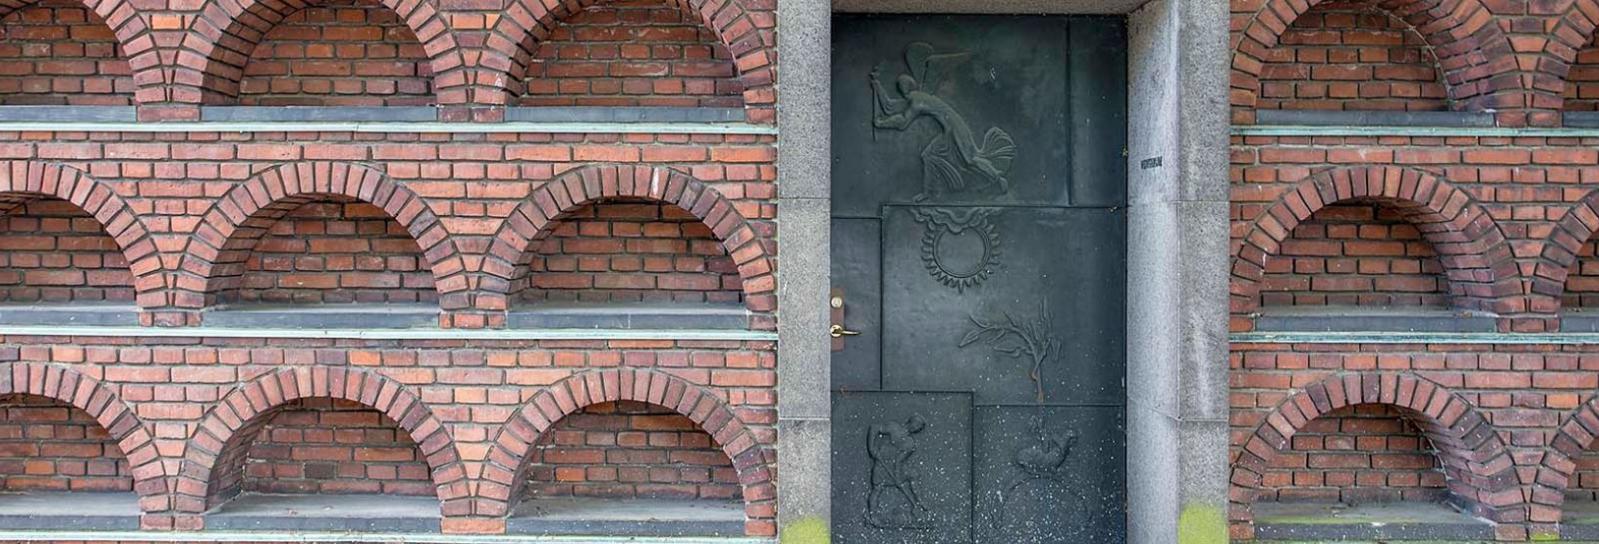 Udsnit af Søndermark Kapel og krematorium med urne-nicher